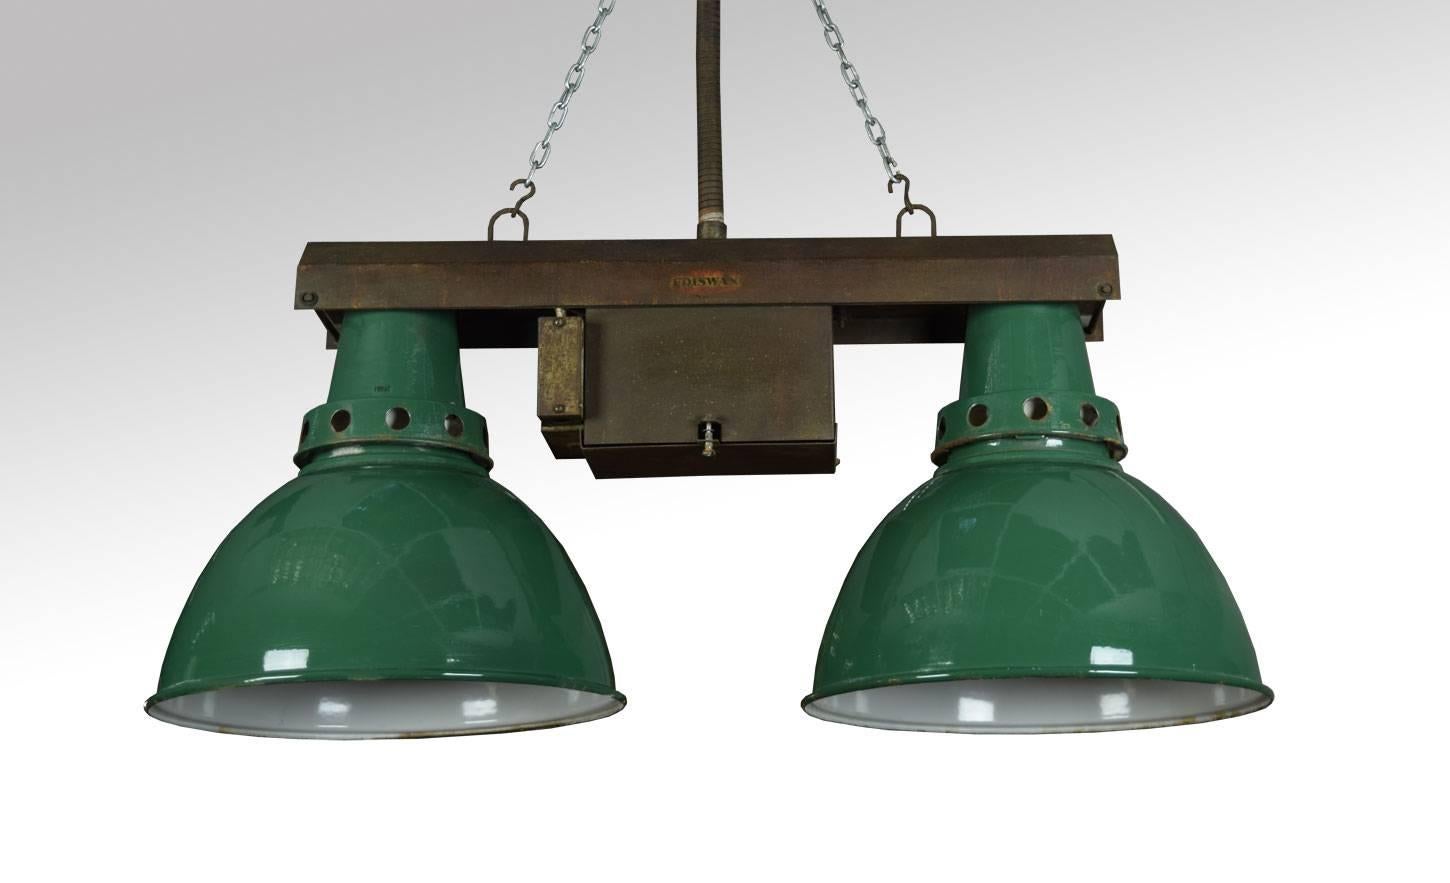 Satz von vier Vintage-Industrieleuchten mit zwei Metallrahmen über zwei grün emaillierten Reflektoren (unverdrahtet).

Abmessungen:

Höhe 17,5 Zoll.

Breite 39 Zoll.

Tiefe 16 Zoll.